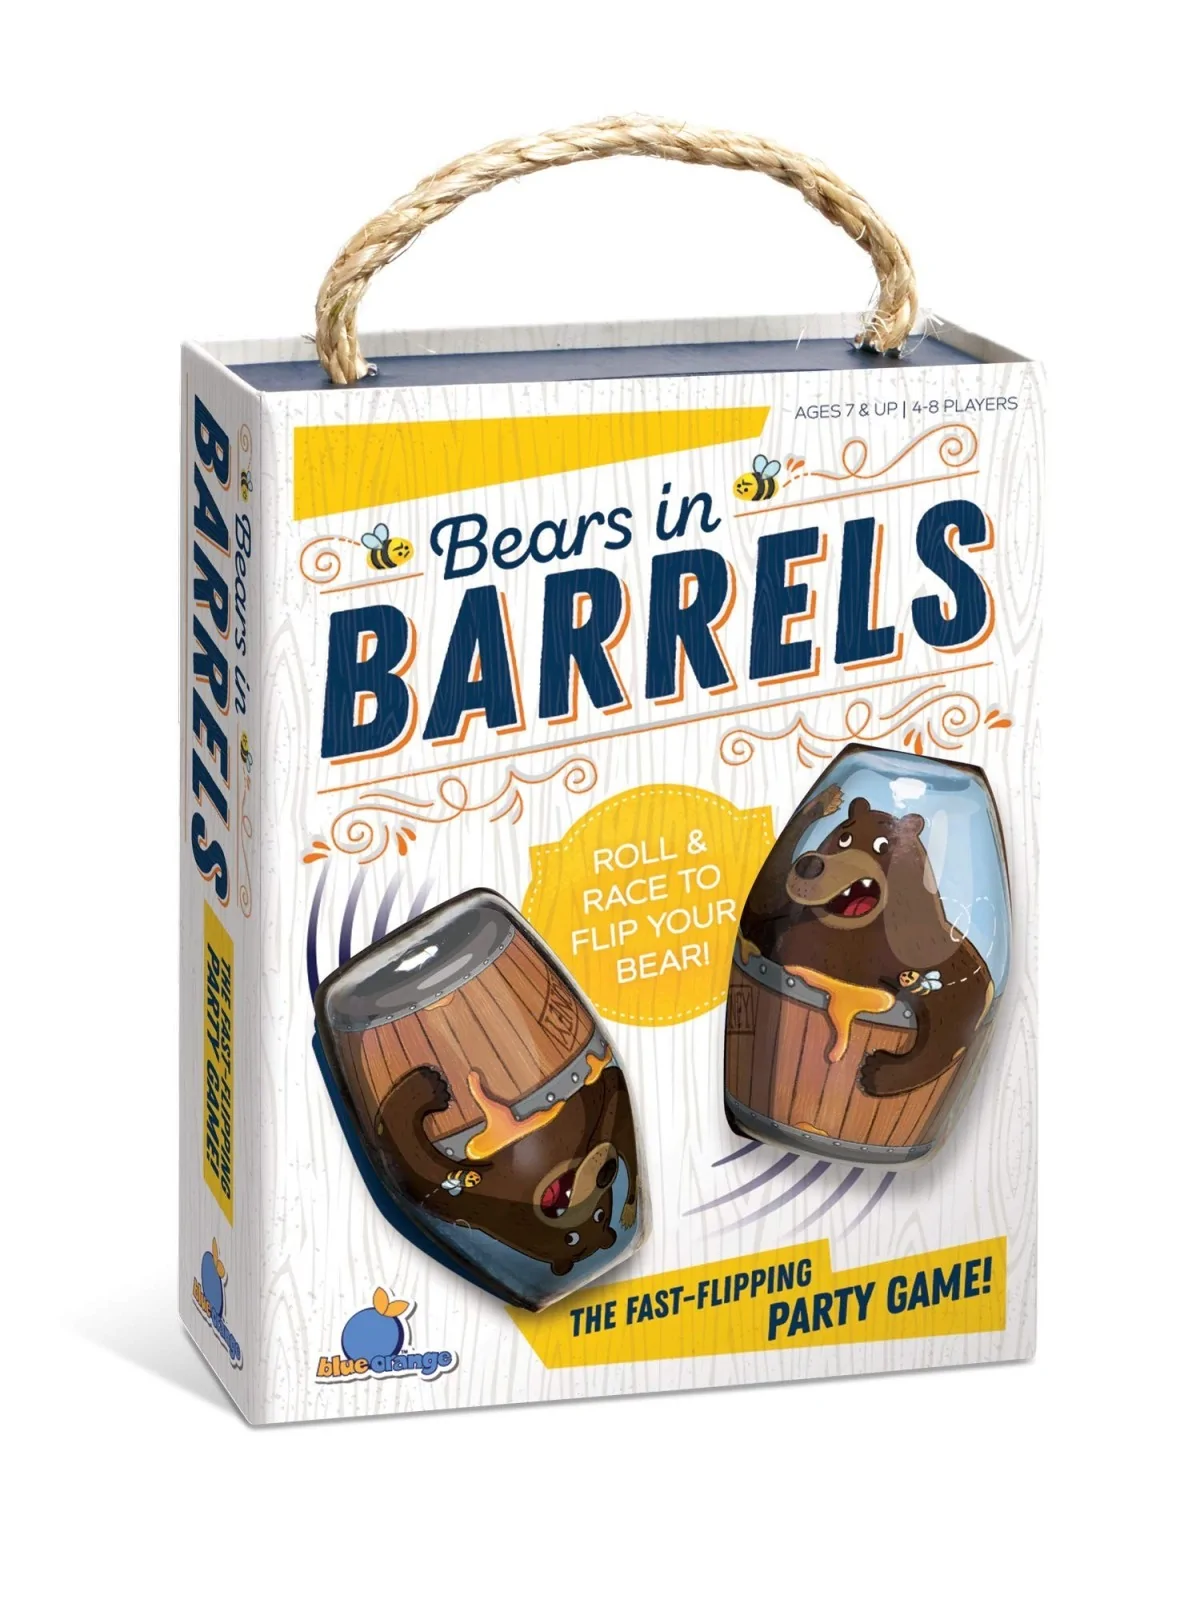 Comprar Bears in Barrels barato al mejor precio 16,11 € de Blue Orange